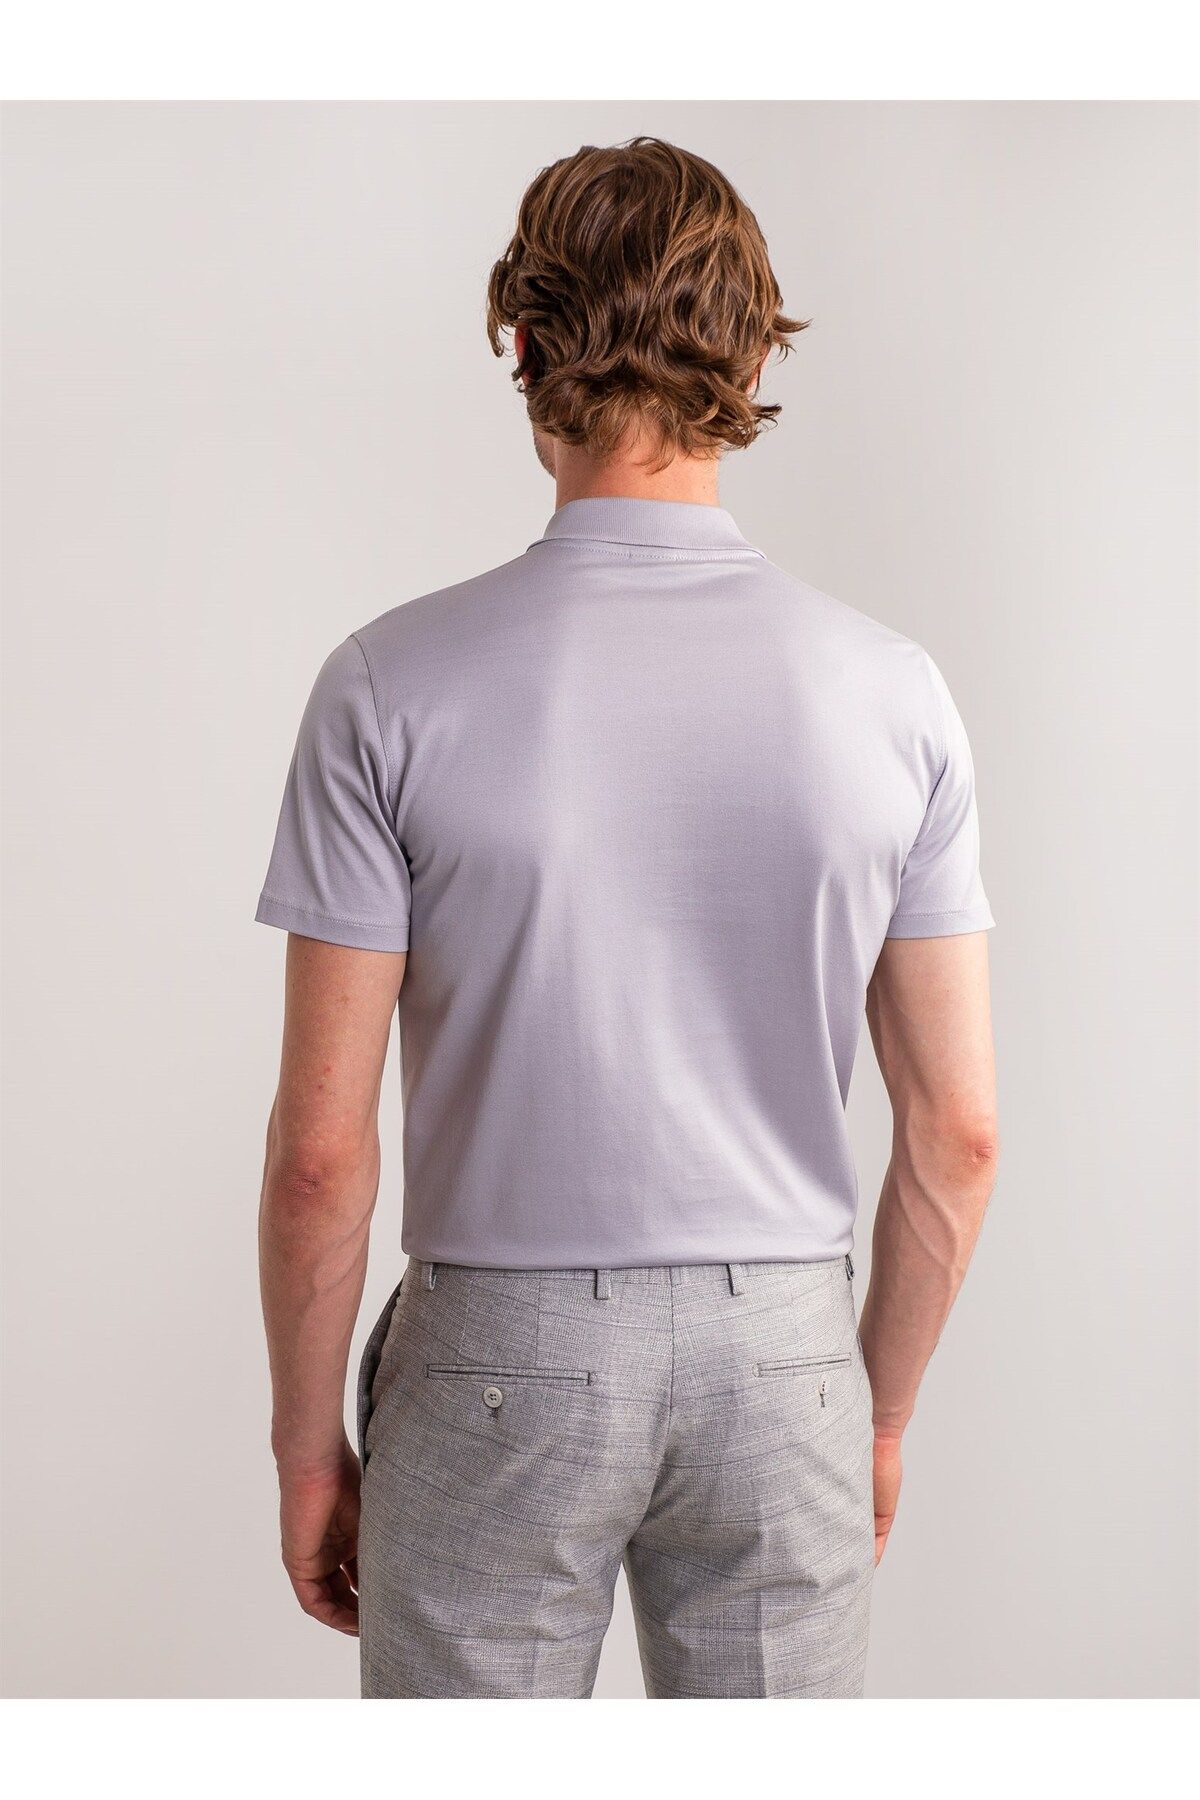 Dufy تی شرت یقه چوگان با تناسب معمولی مردانه خاکستری